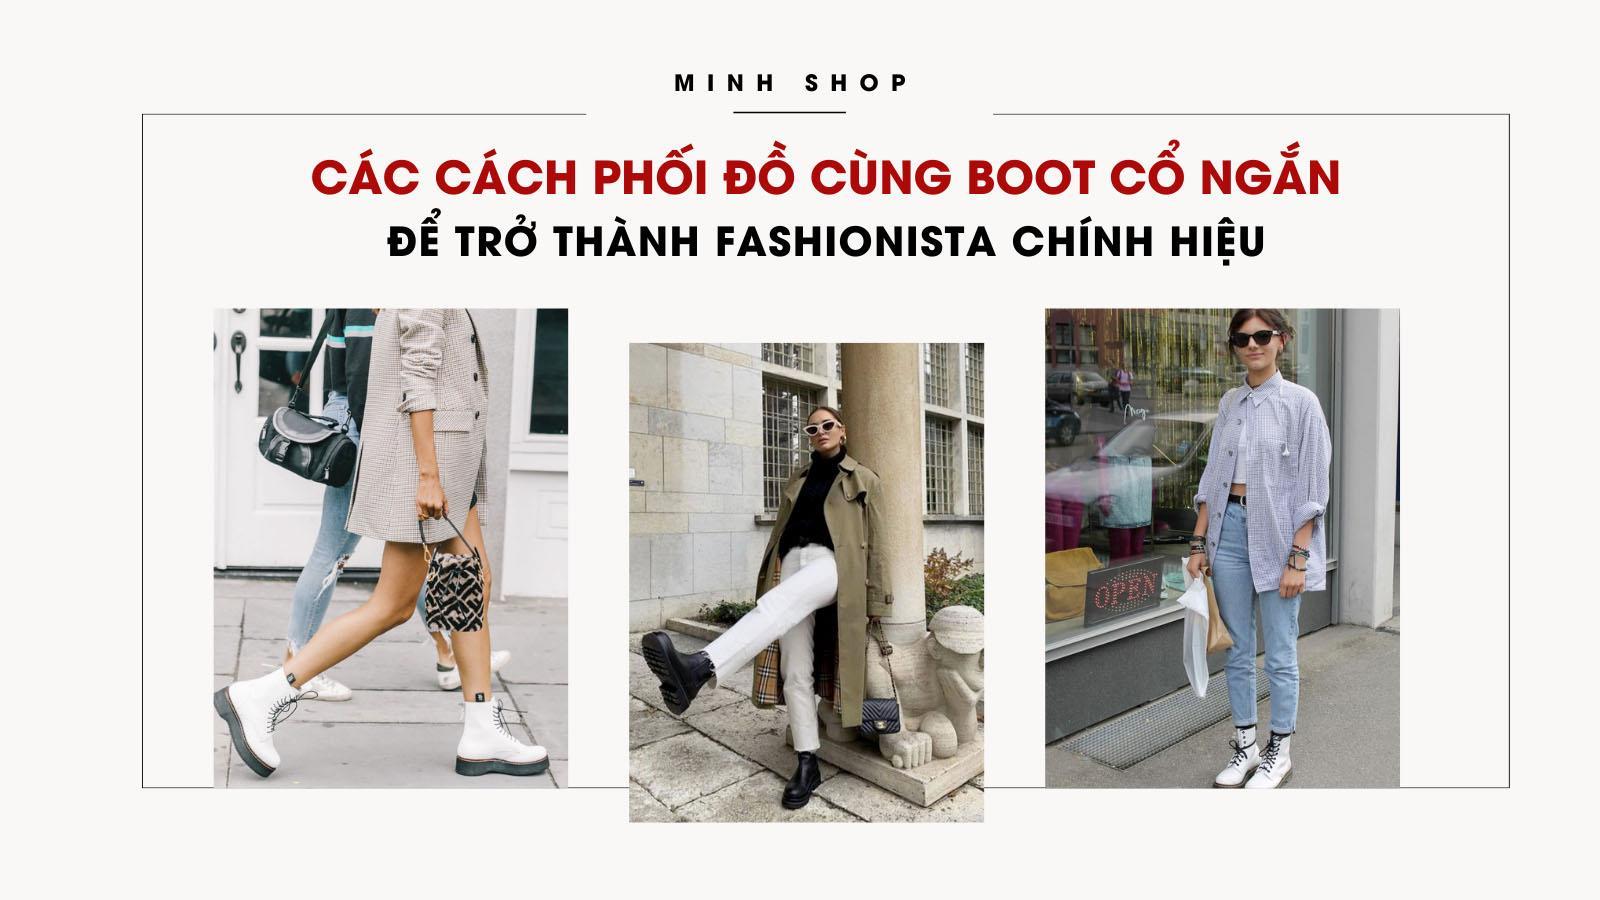 cac-cach-phoi-do-cung-boot-co-ngan-de-tro-thanh-fashionista-chinh-hieu